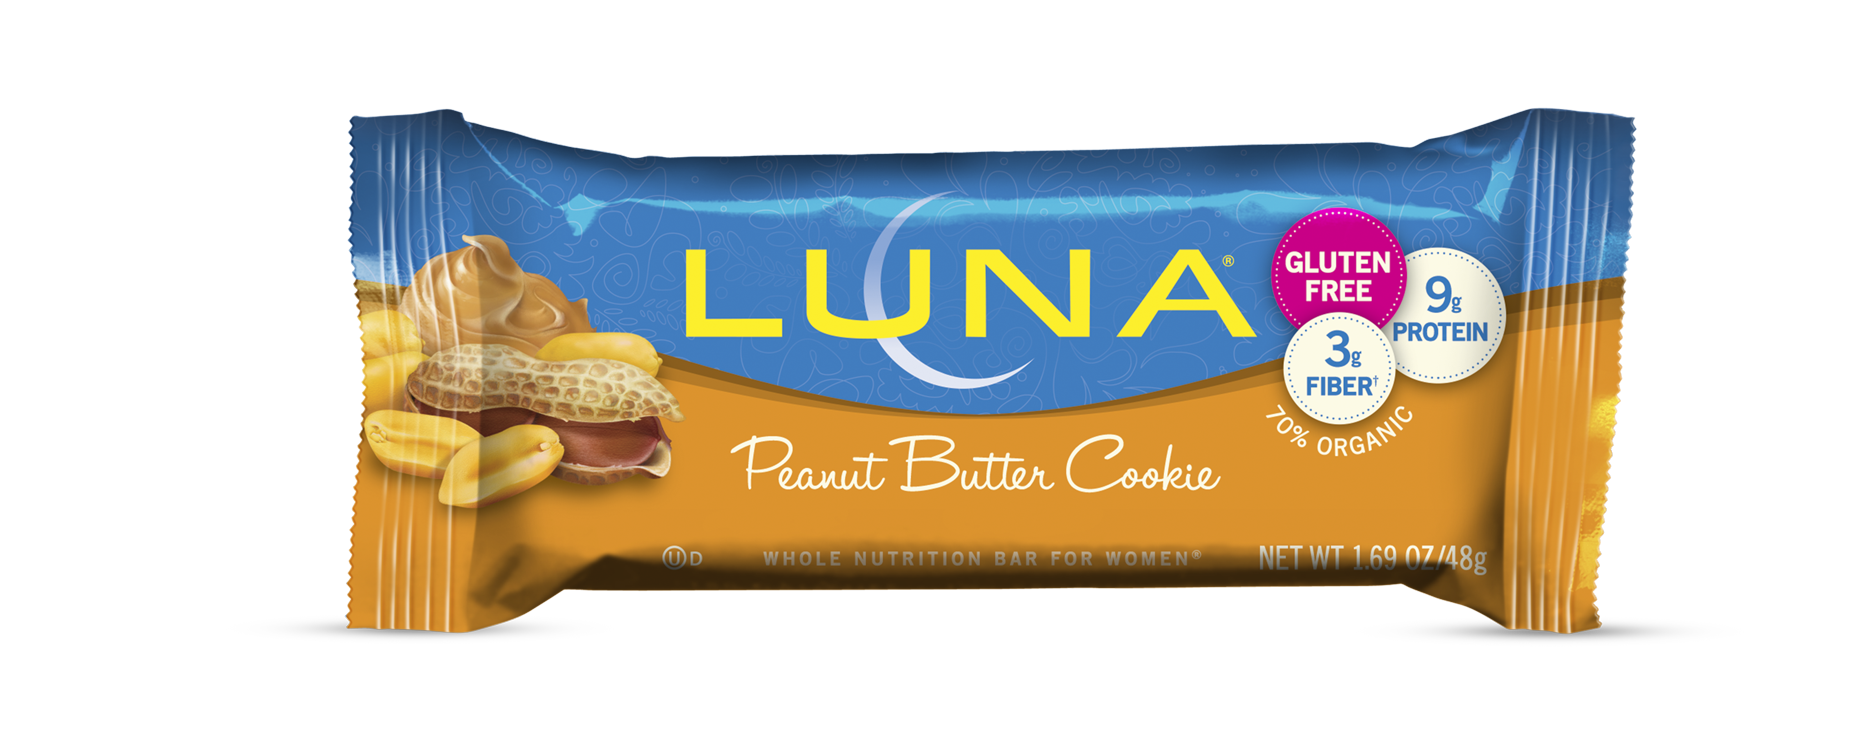 Luna Peanut Butter Cookie